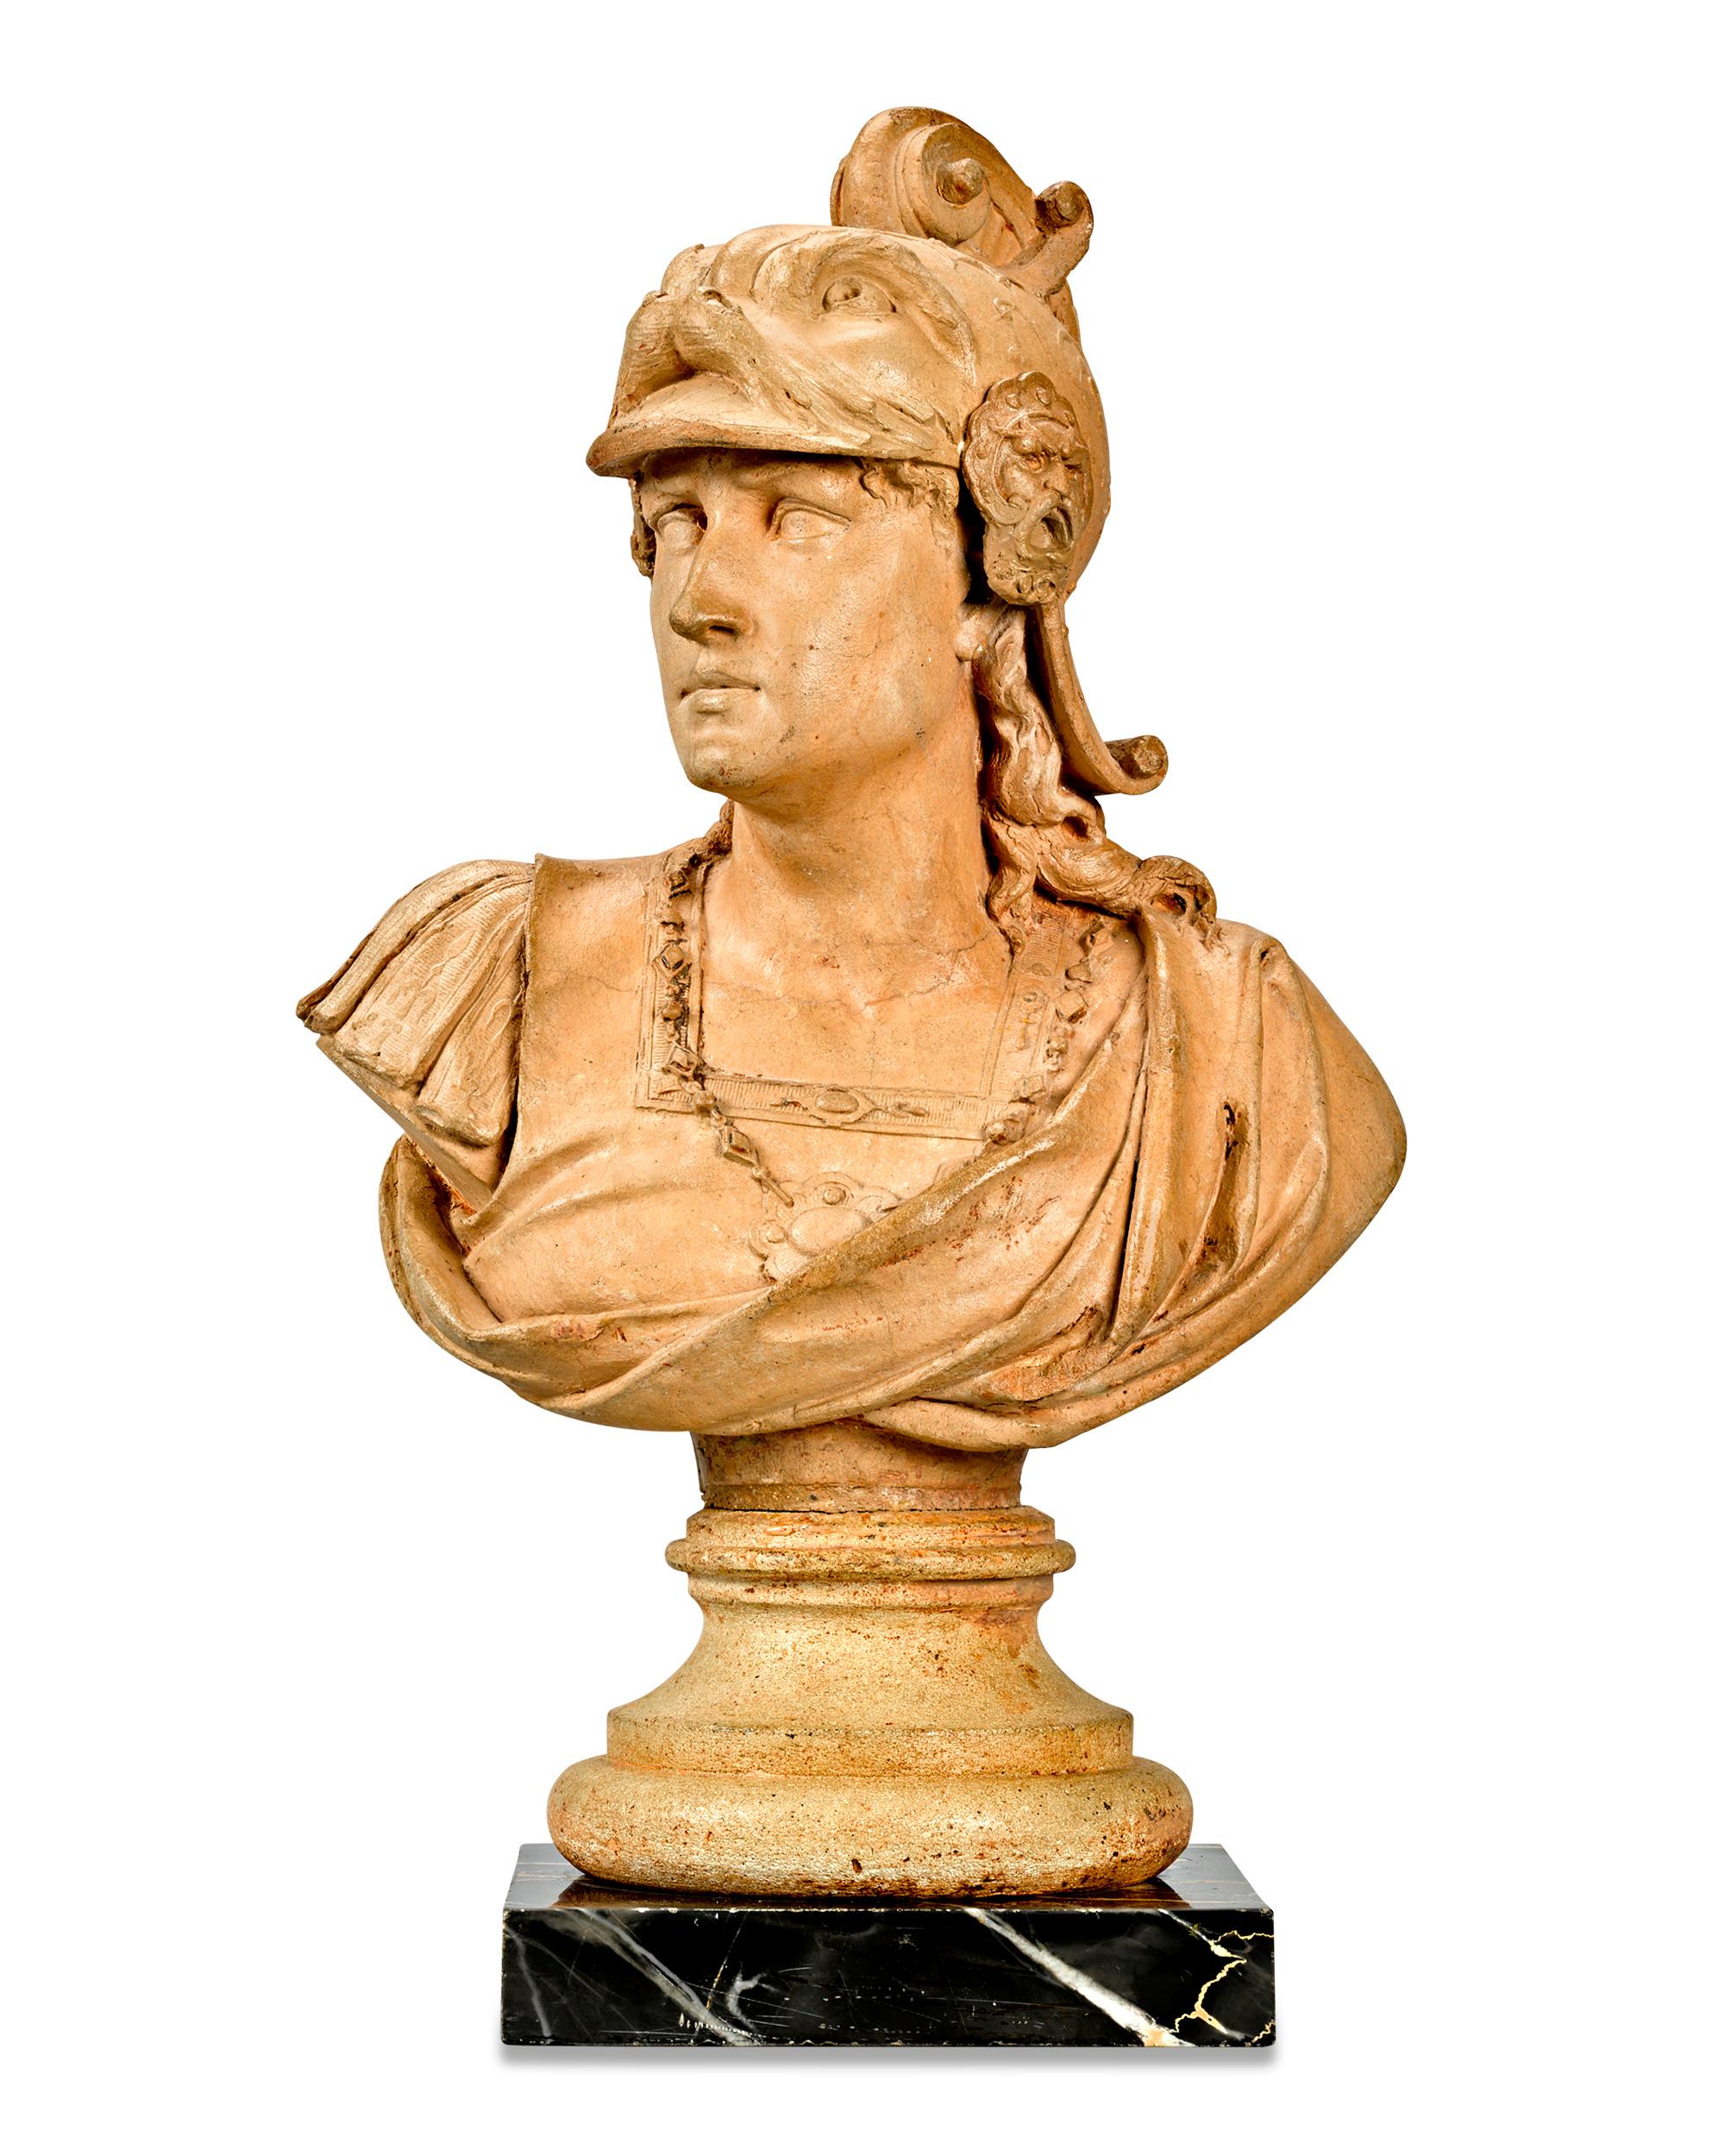 Ubaldo Gandolfi Figurative Sculpture - Perseus